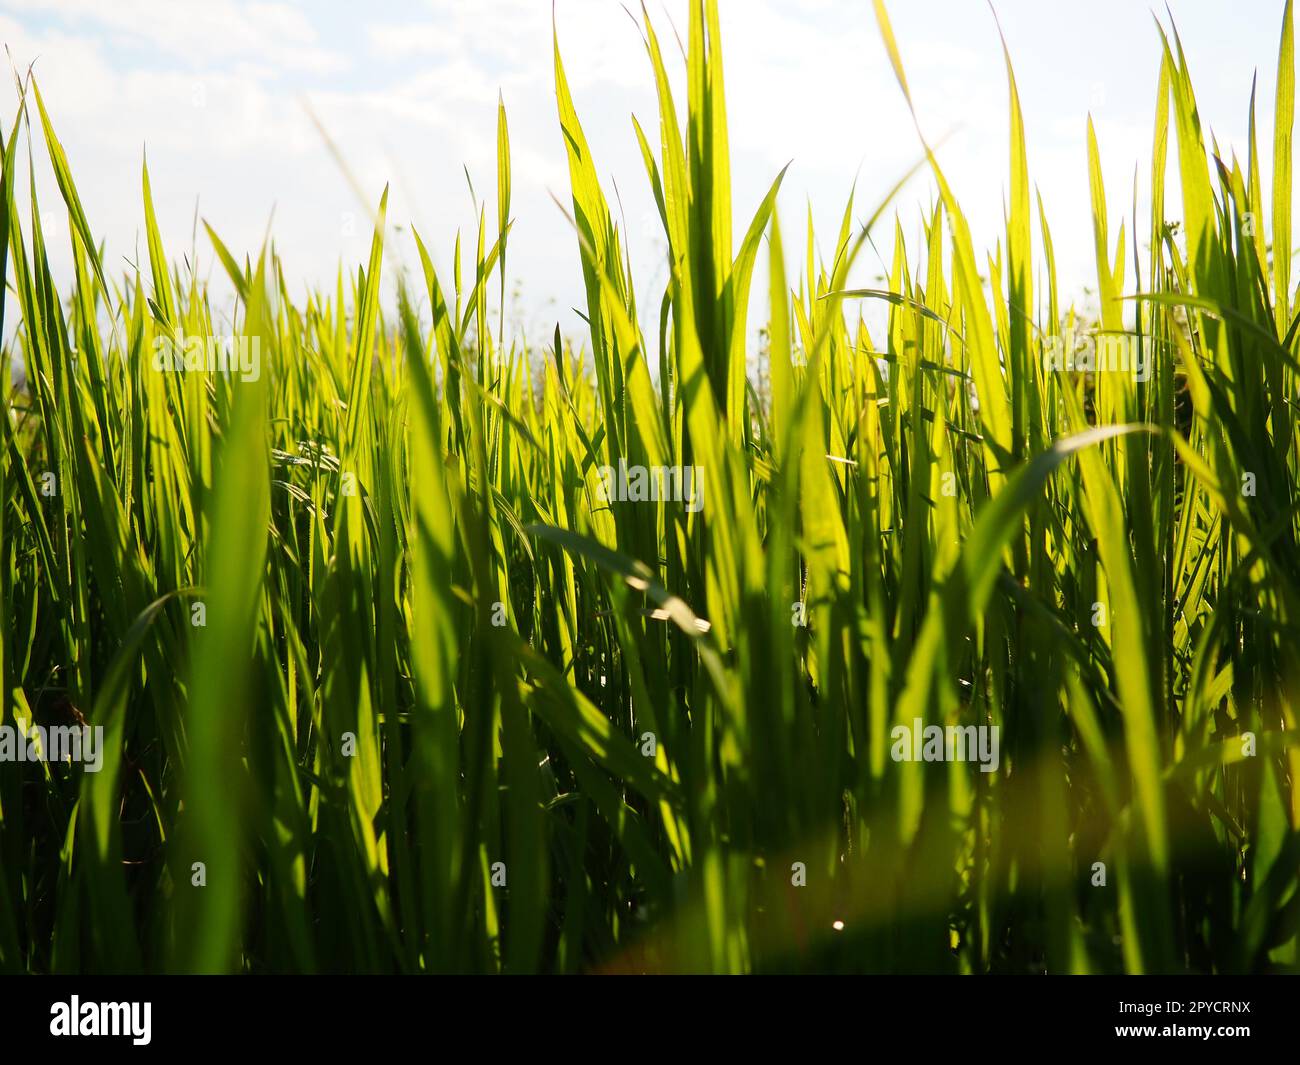 Belle herbe verte luxuriante dans la prairie ou le champ. Le blé d'hiver a poussé sur les terres agricoles. Temps ensoleillé. Champ, clairière ou prairie avec végétation sauvage. Arrière-plan naturel Banque D'Images